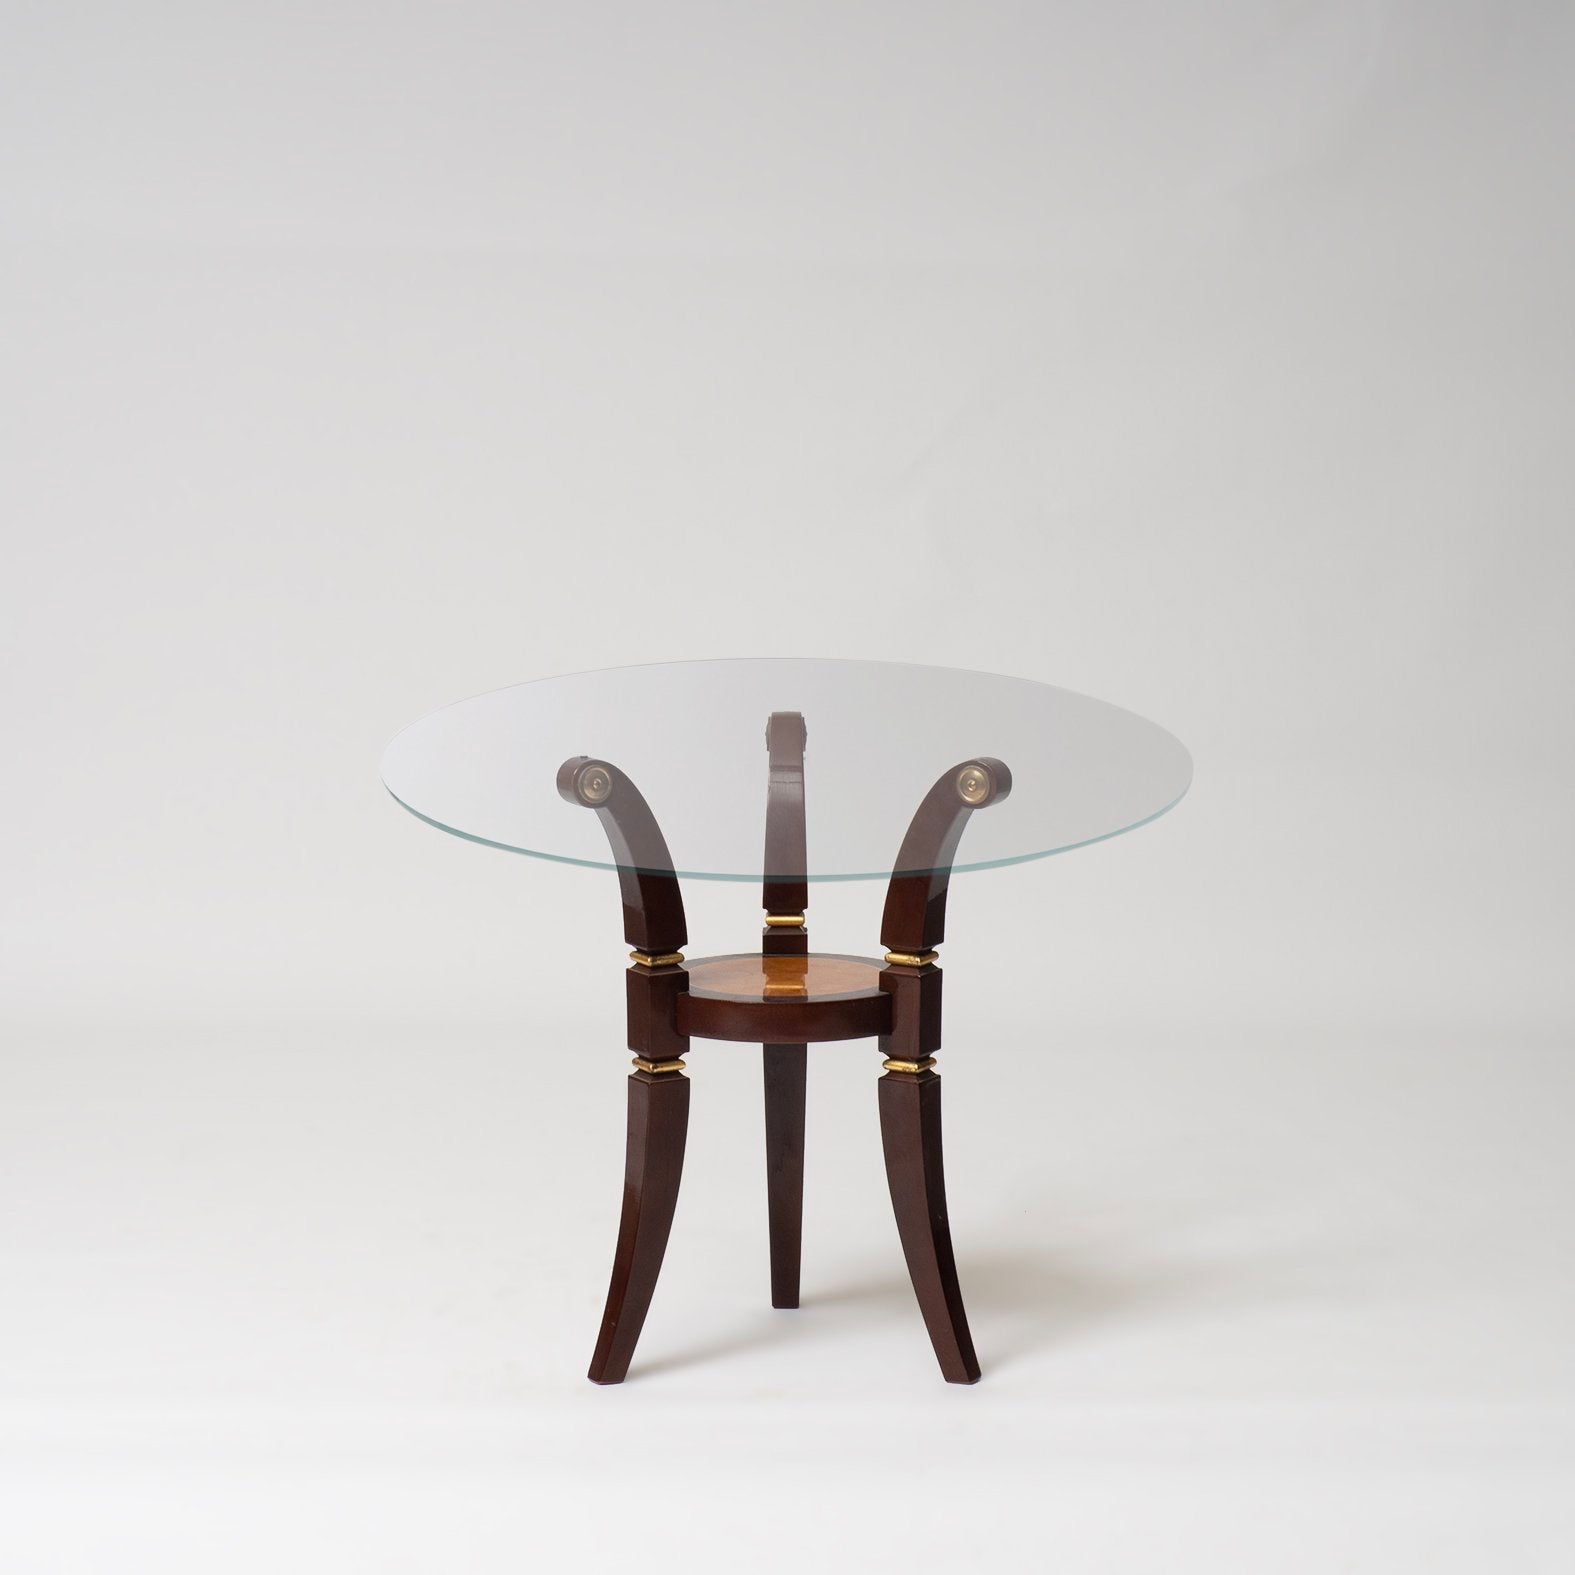 Meris Side Table in Reddish Brown by Turri